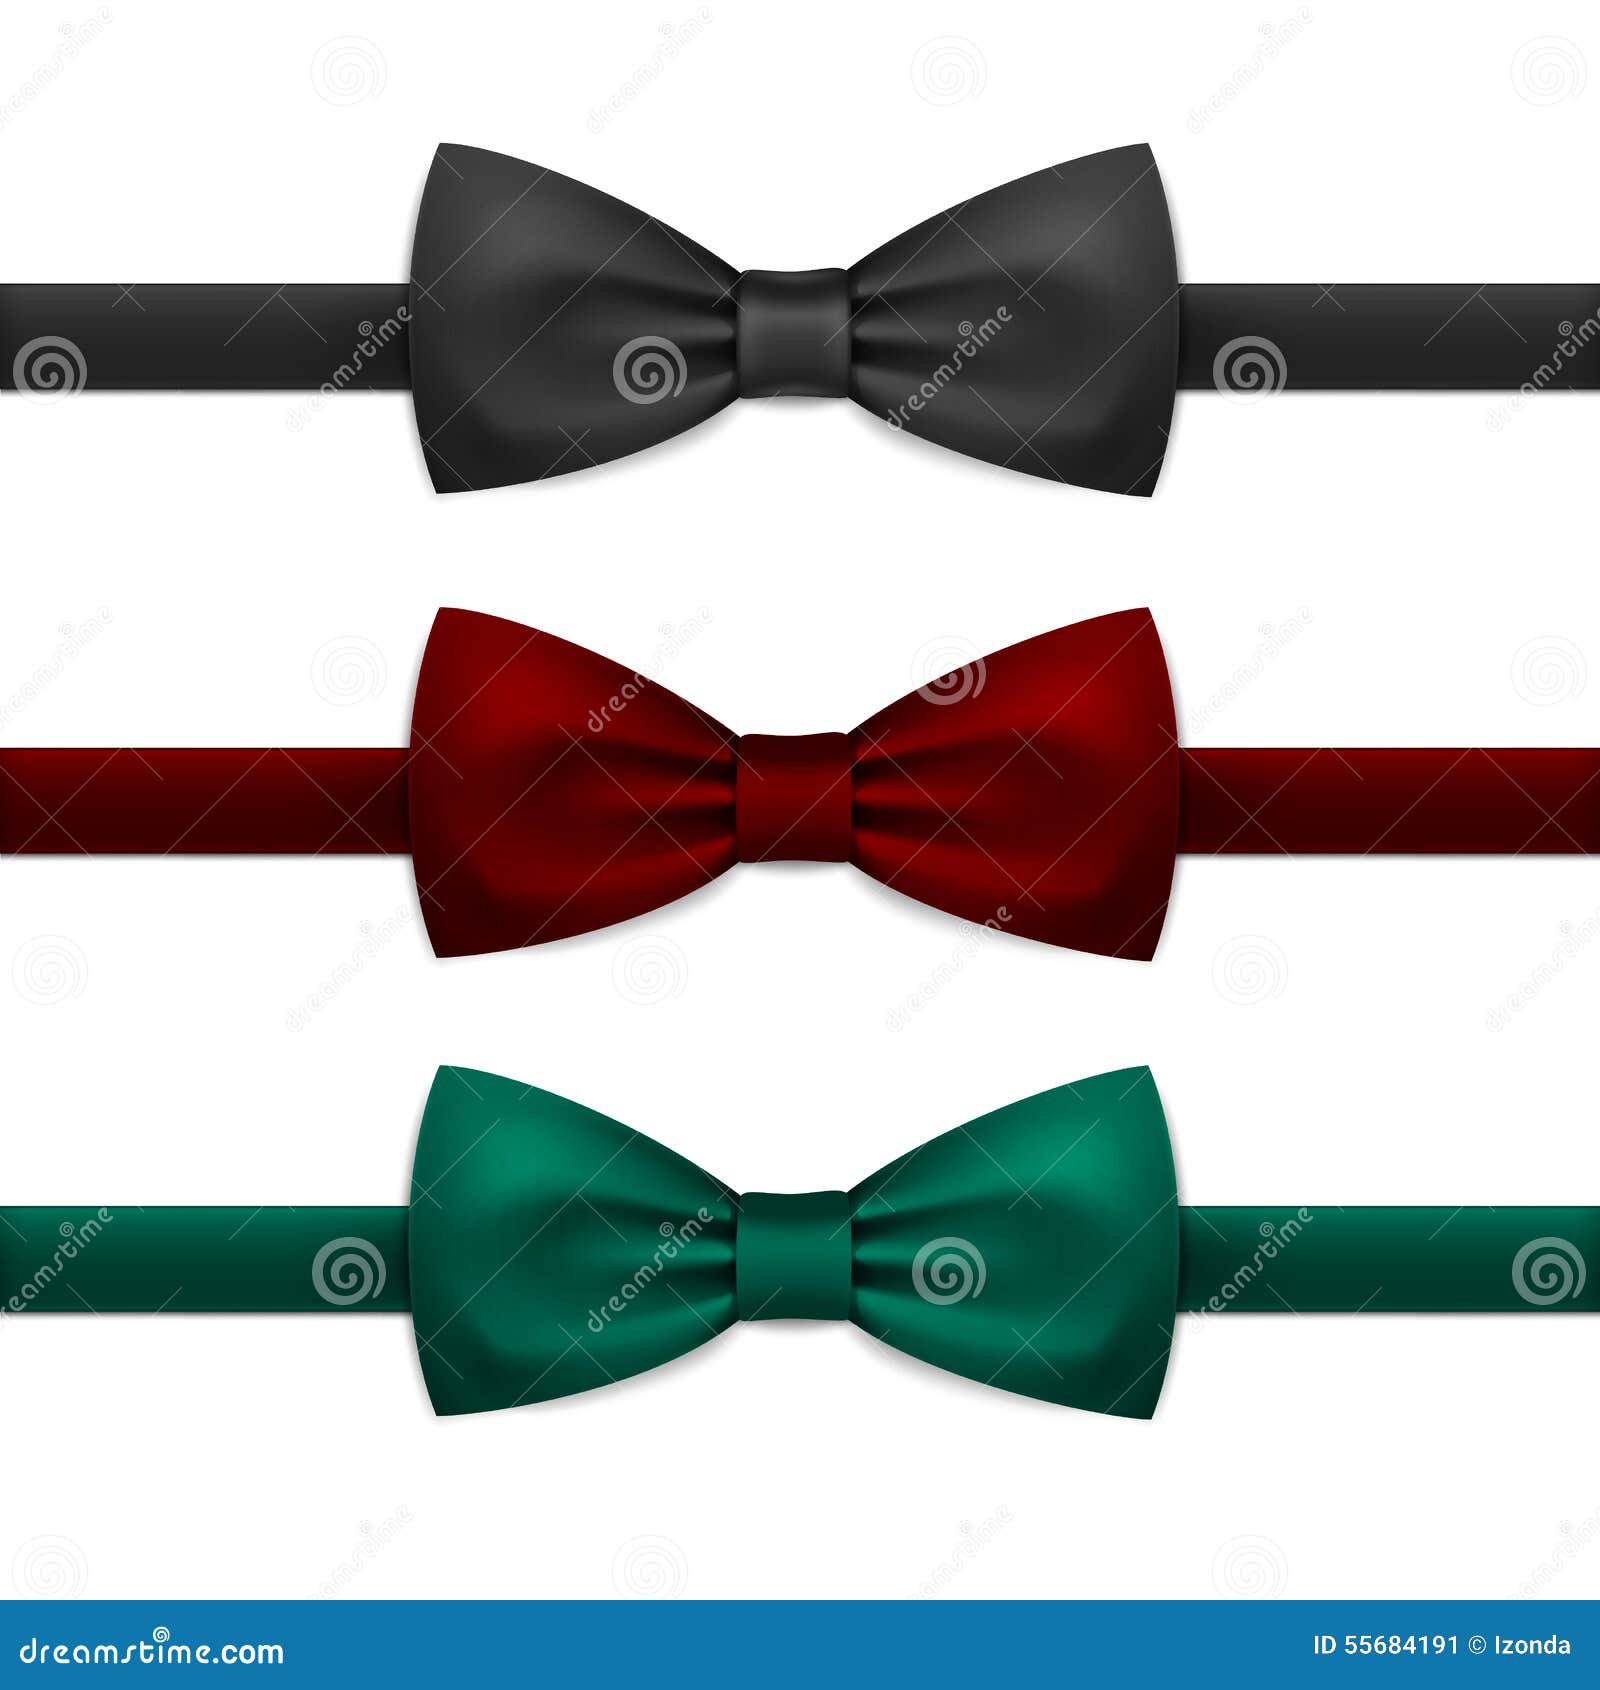  bow tie bowtie set  on white